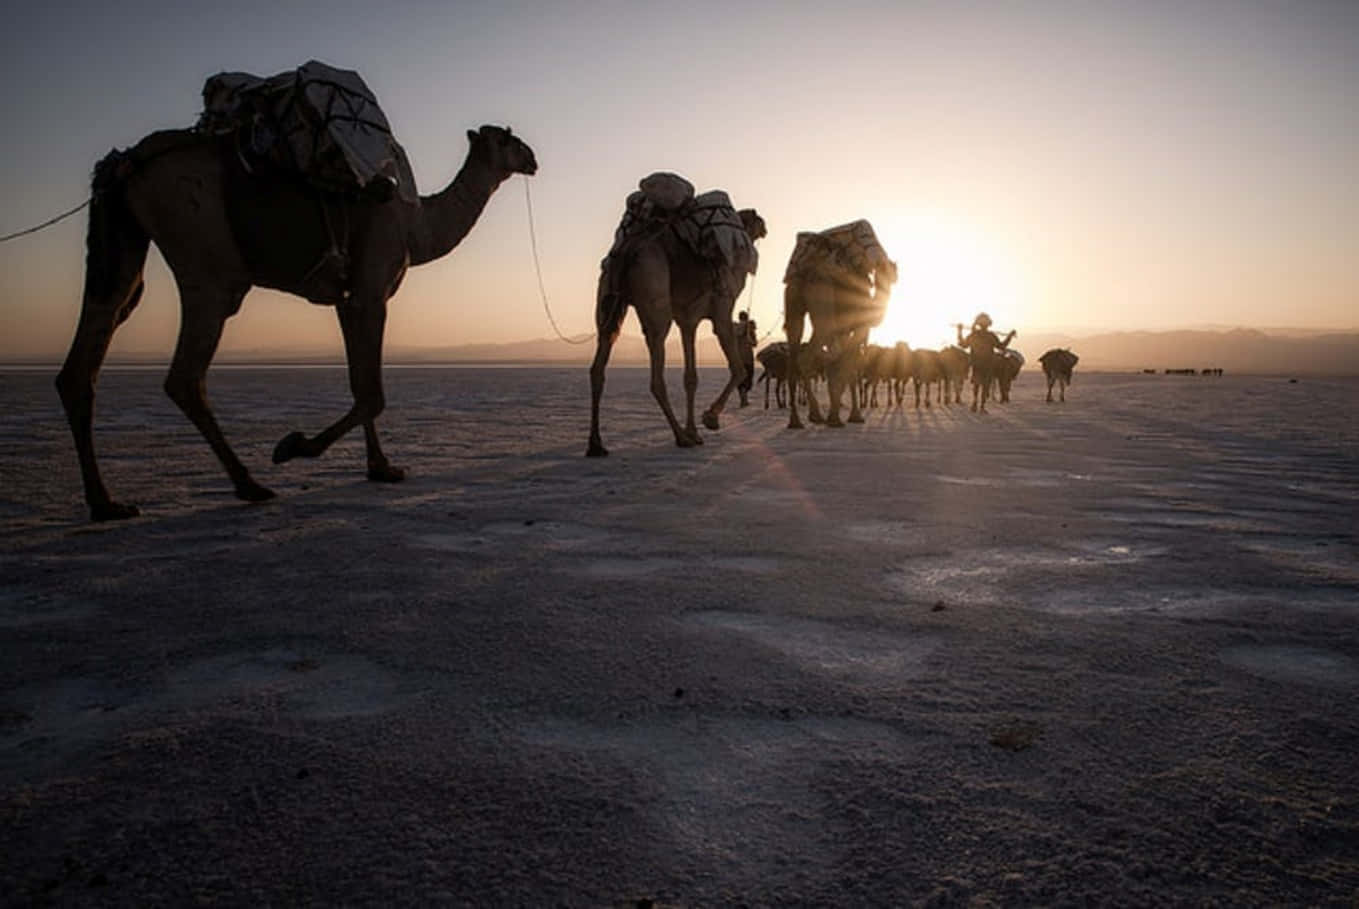 Camelloscaminando En El Desierto Al Atardecer